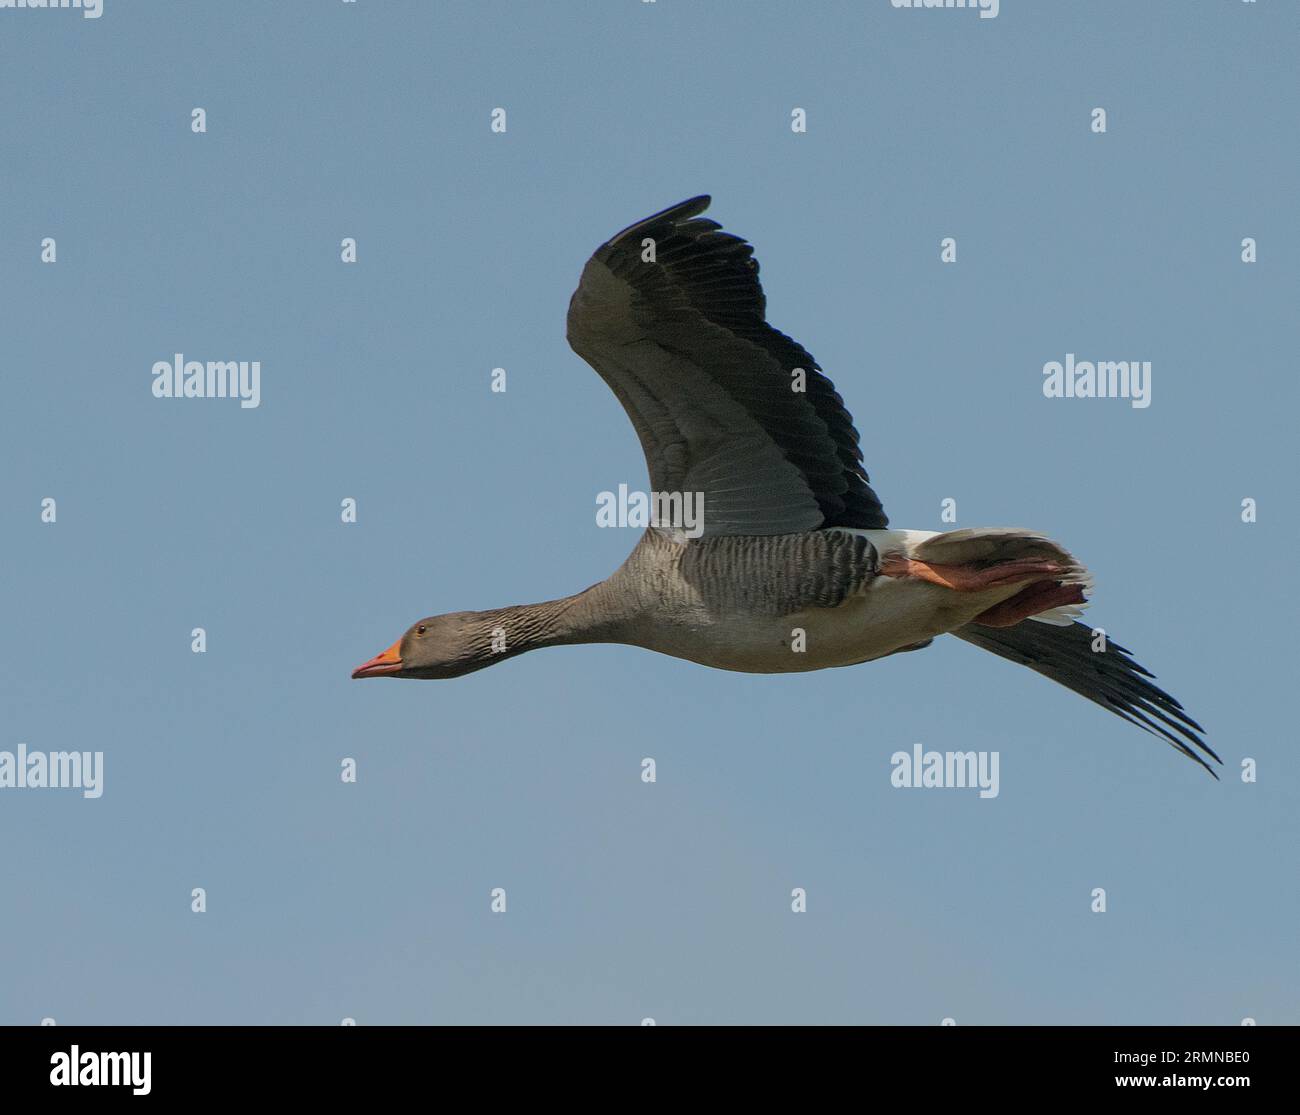 Image en couleur et vue rapprochée d'une seule poule Greylag montrant clairement le plumage complet du corps et des ailes et volant de droite à gauche contre un ciel bleu pâle Banque D'Images